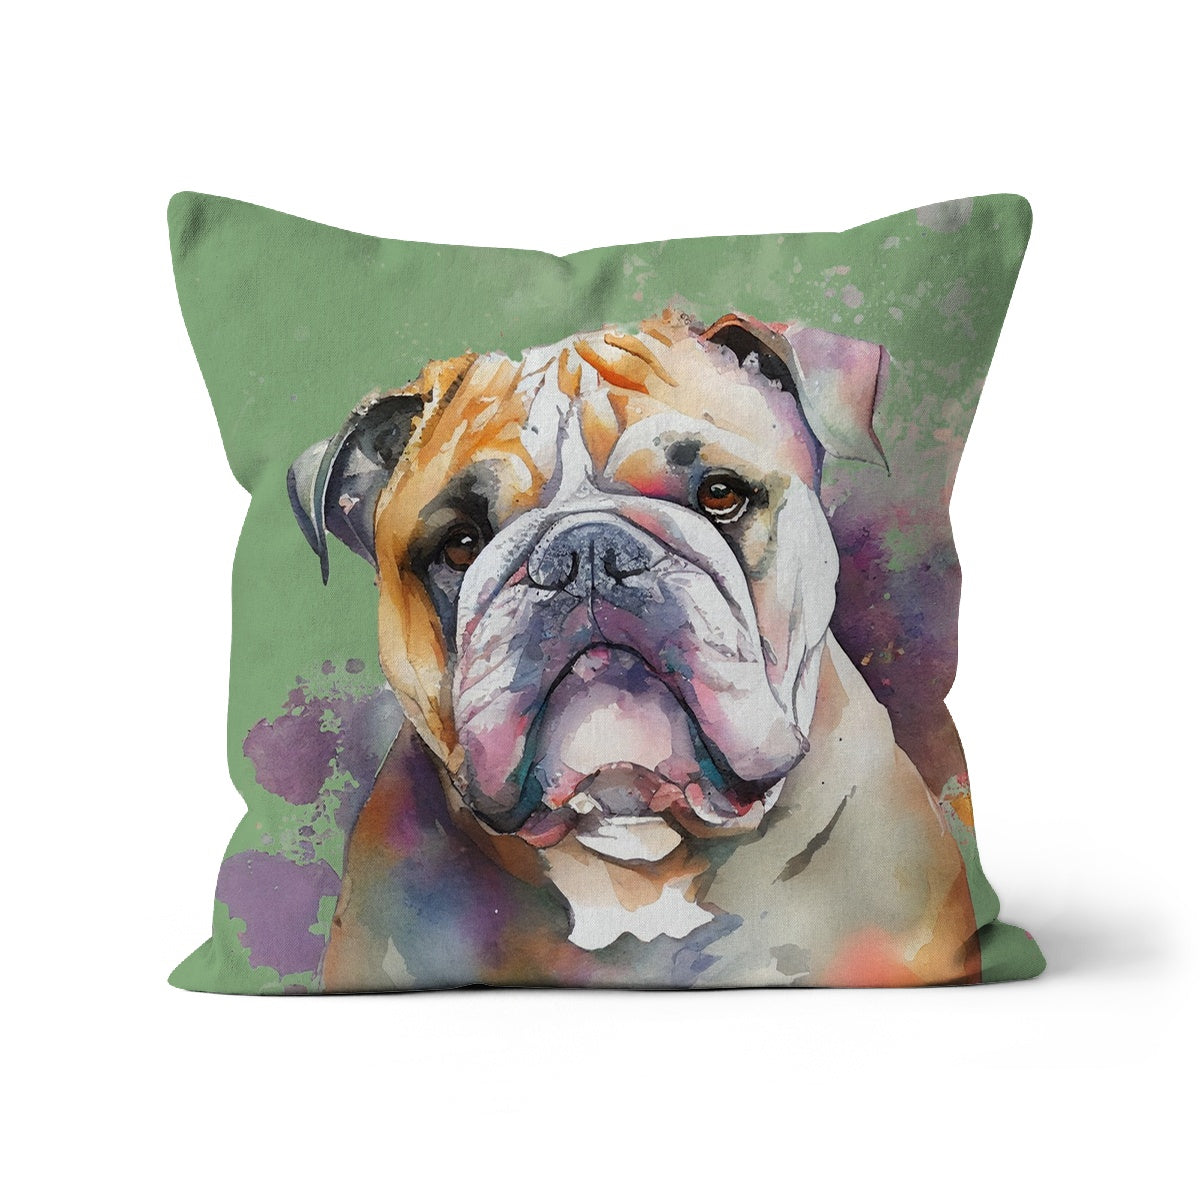 British Bulldog Cushion